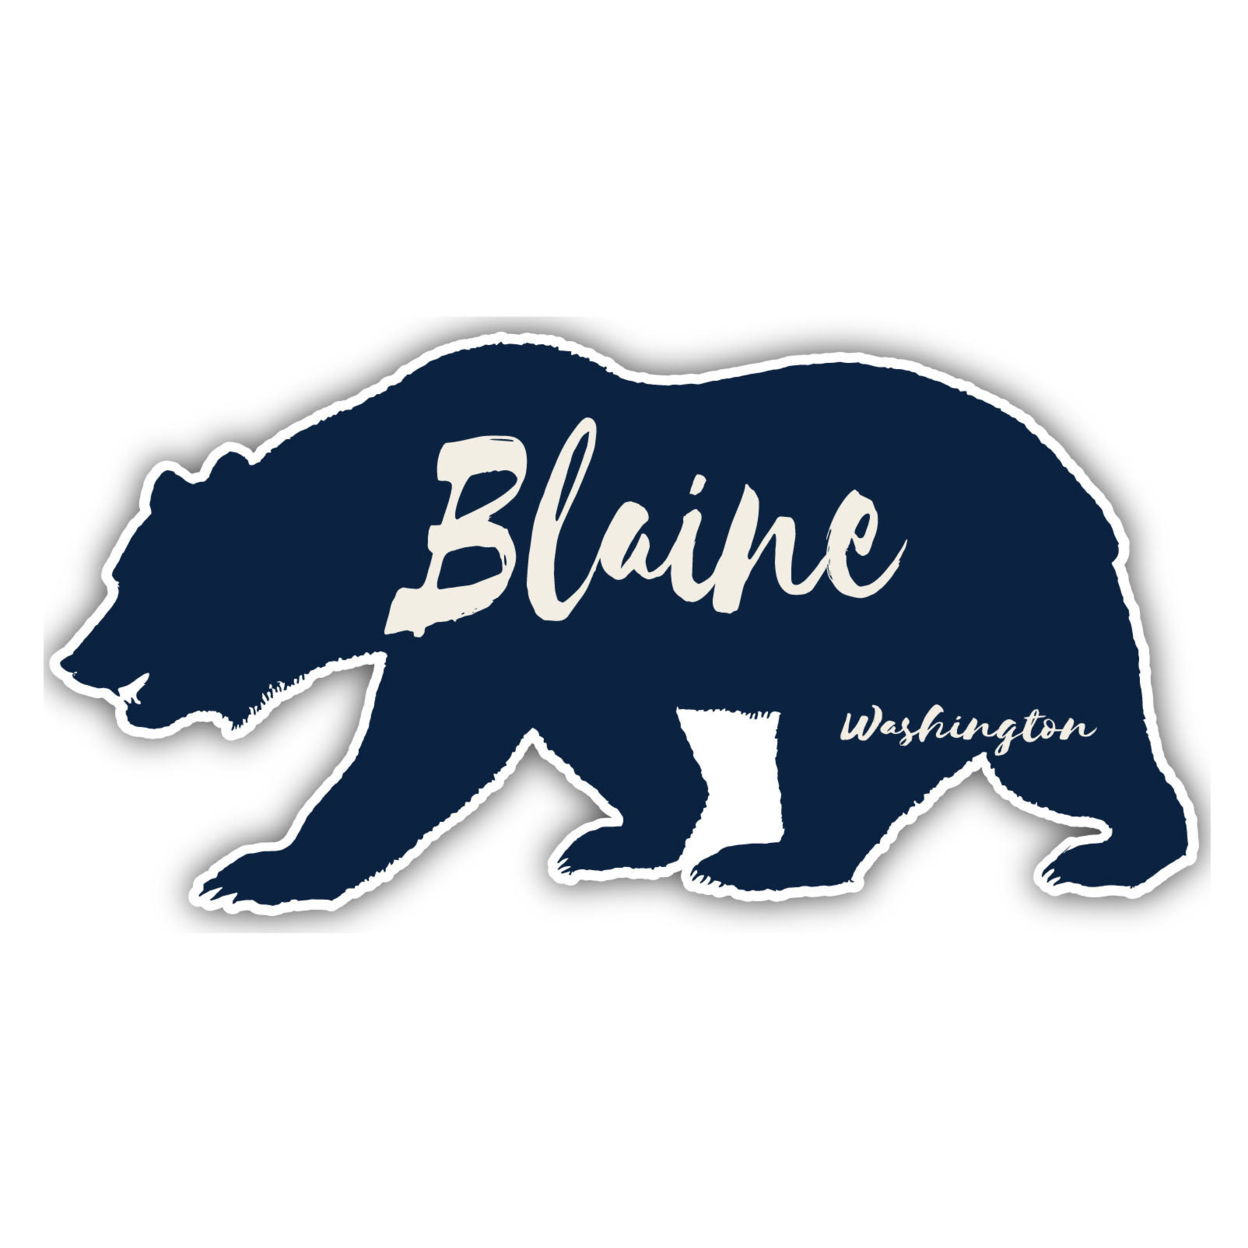 Blaine Washington Souvenir Decorative Stickers (Choose Theme And Size) - 4-Pack, 6-Inch, Tent